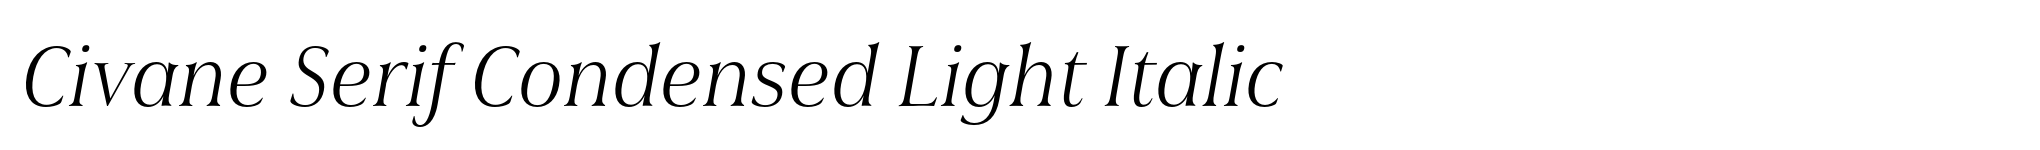 Civane Serif Condensed Light Italic image